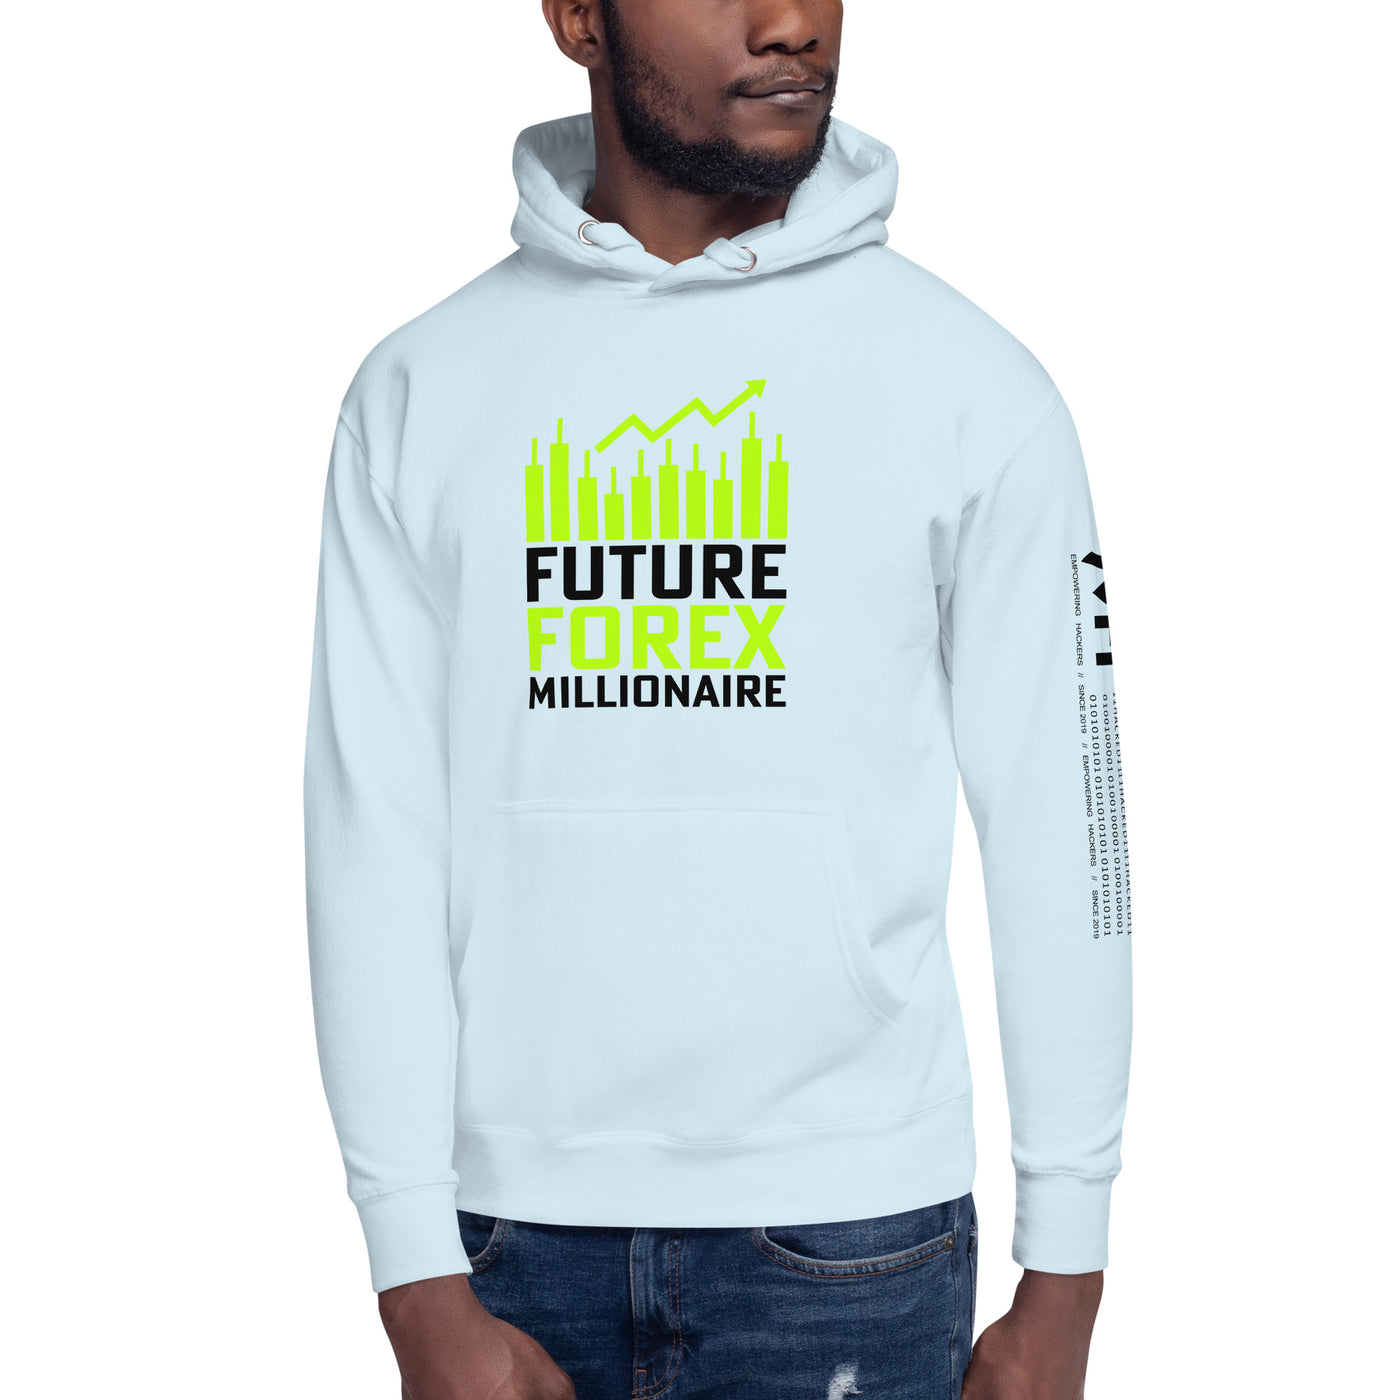 Future Forex Millionaire in Dark Text - Unisex Hoodie